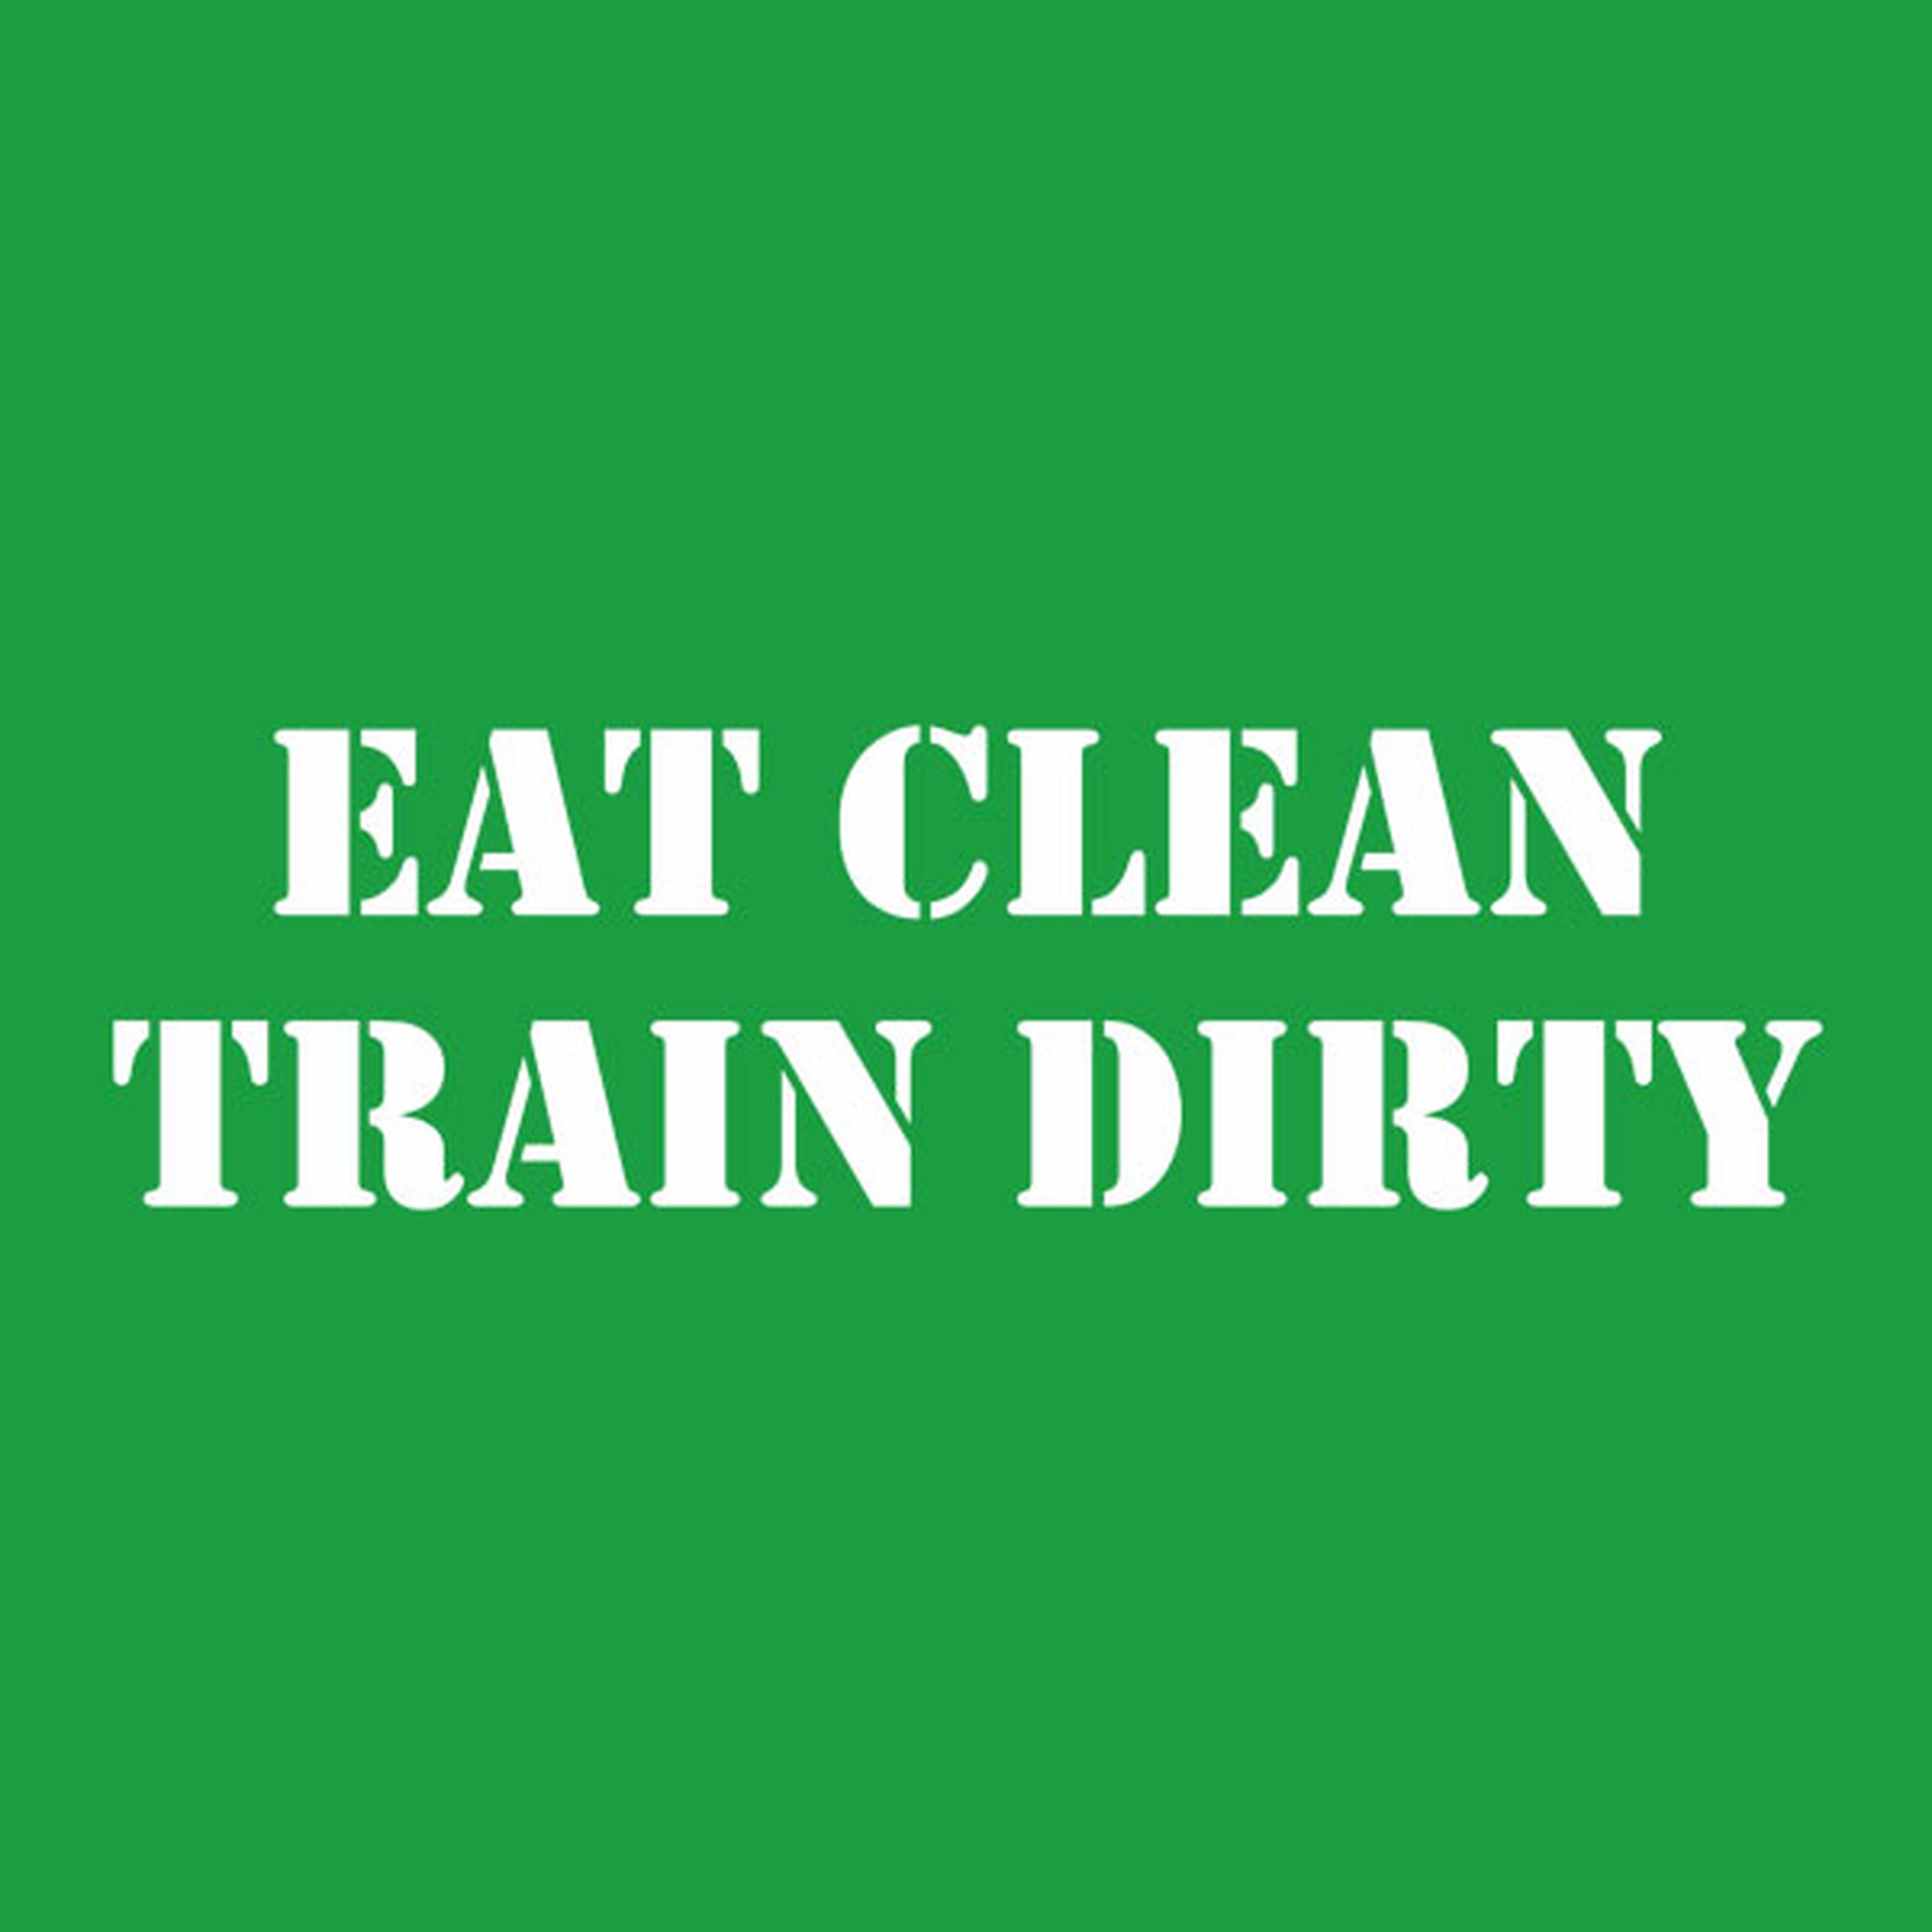 Eat clean. Train dirty. - T-shirt